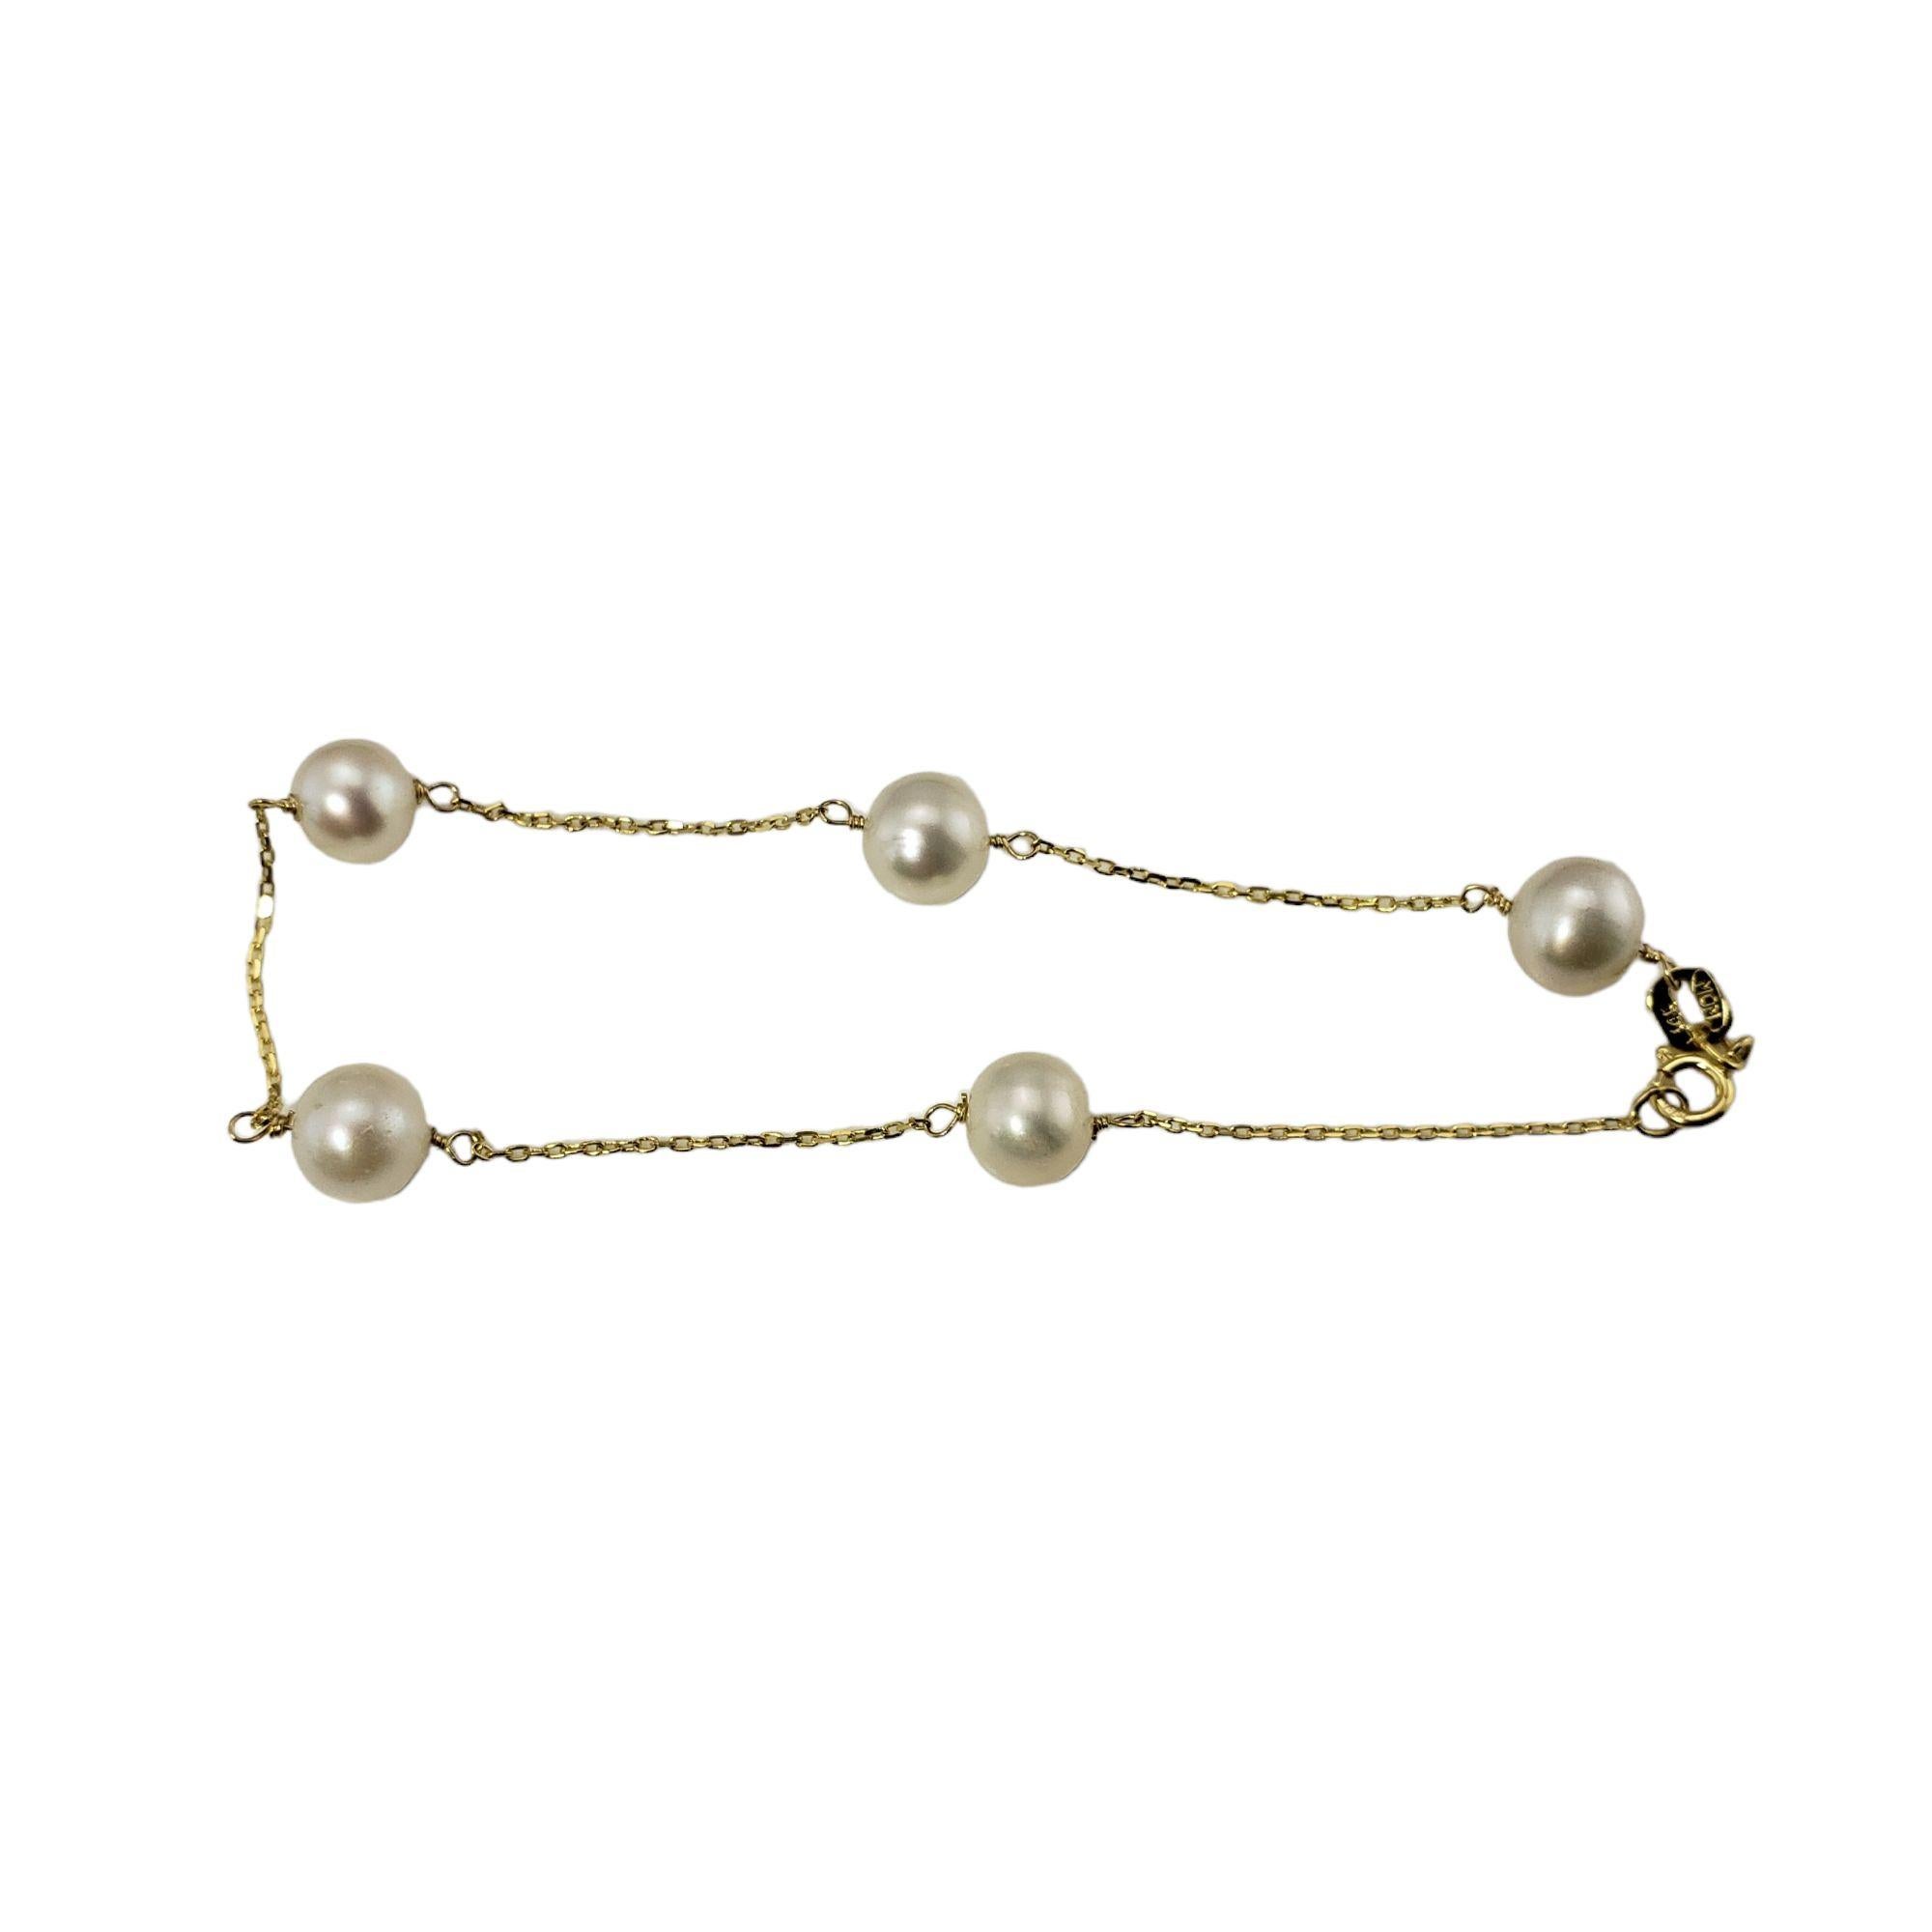 Ce charmant bracelet est composé de cinq perles rondes (6 mm chacune) montées sur une chaîne en câble classique.

Taille : 6.5 pouces

Poids :  1.3 dwt. /  2,1 gr.

Estampillé : 14K

Très bon état, polissage professionnel.

Il sera emballé dans une